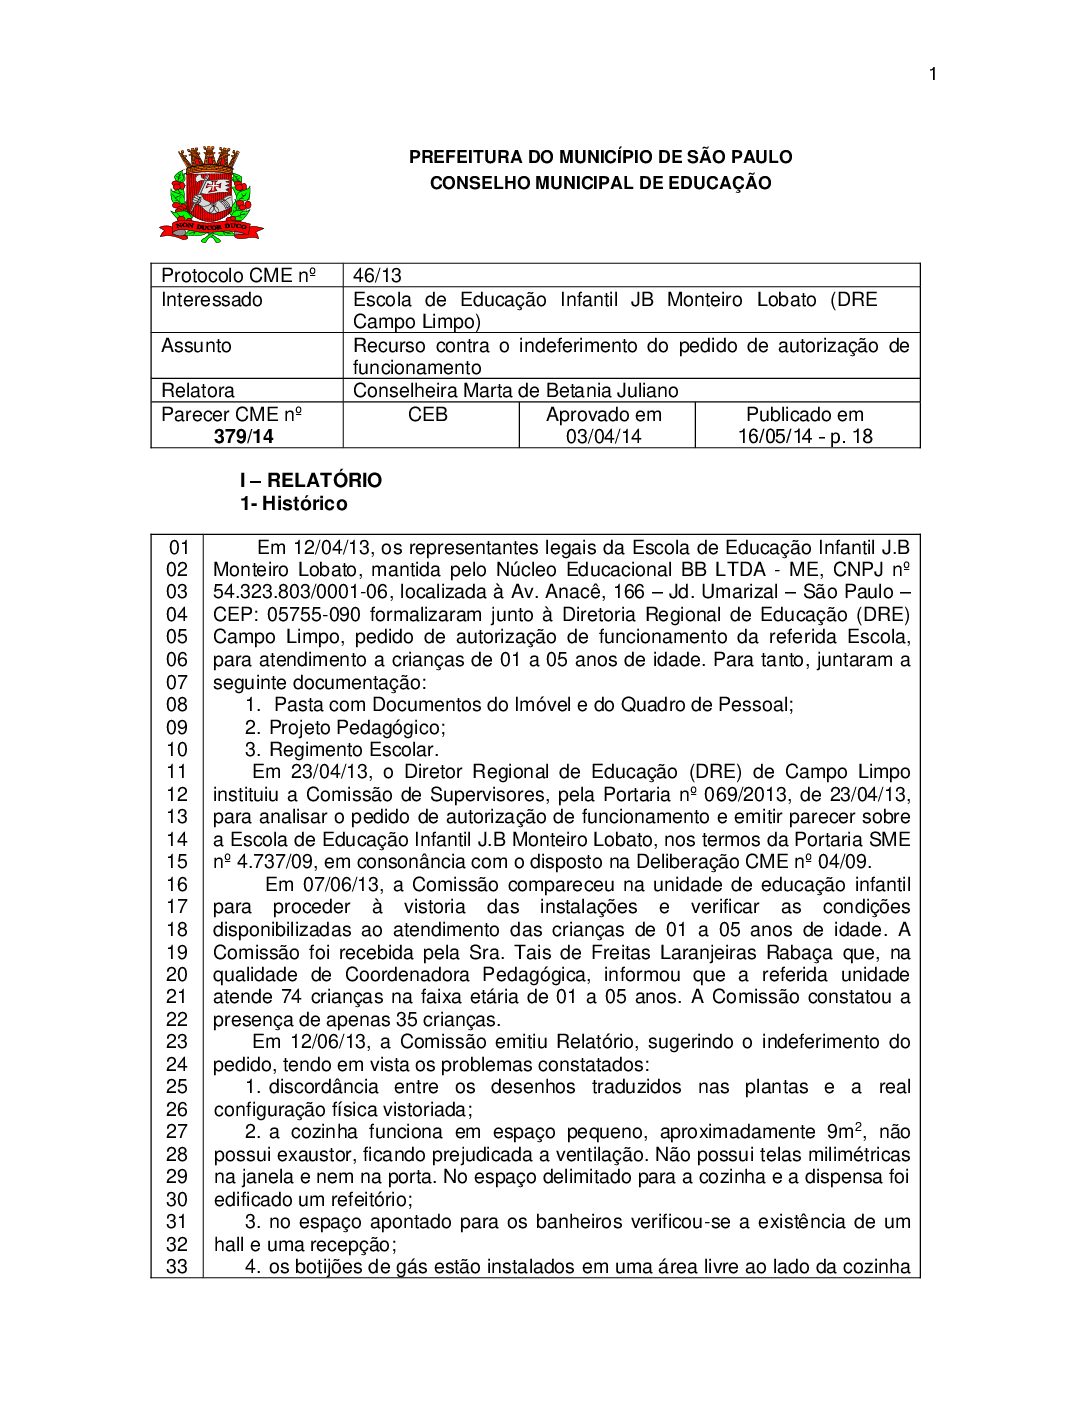 Parecer CME nº 379/2014 - Escola de Educação Infantil JB Monteiro Lobato (DRE Campo Limpo) - Recurso contra o indeferimento do pedido de autorização de funcionamento 